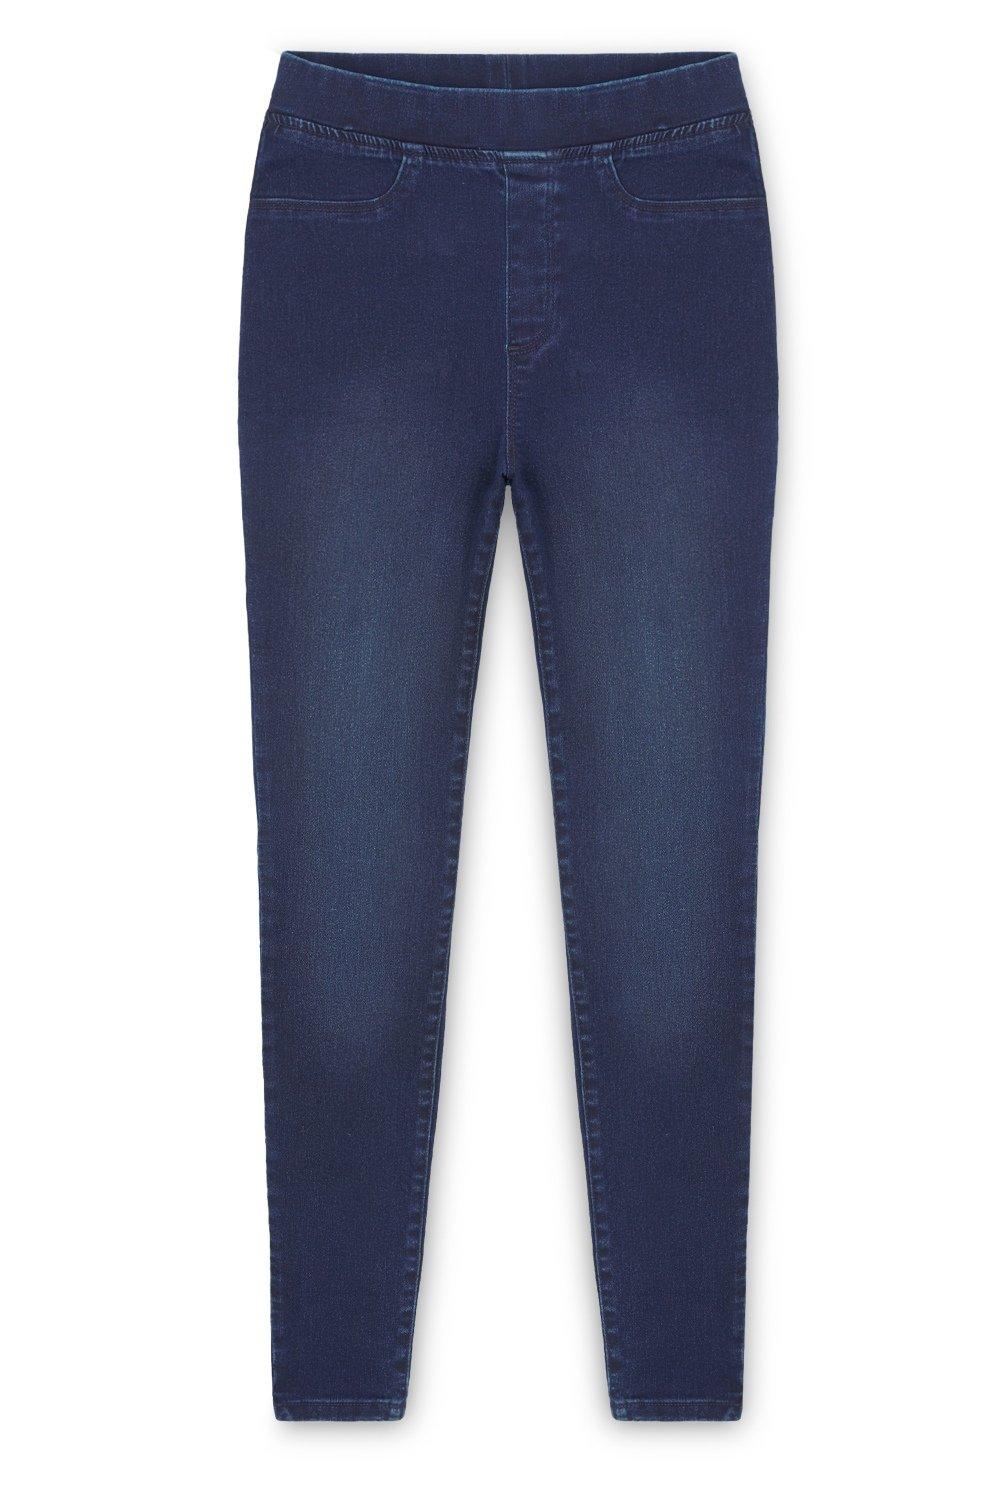 Эластичные джеггинсы с эластичной резинкой на талии CityComfort, синий женские джинсы большого размера черные джинсы с высокой талией для женщин хлопковые эластичные джинсы рваные джинсы объемные джинсы